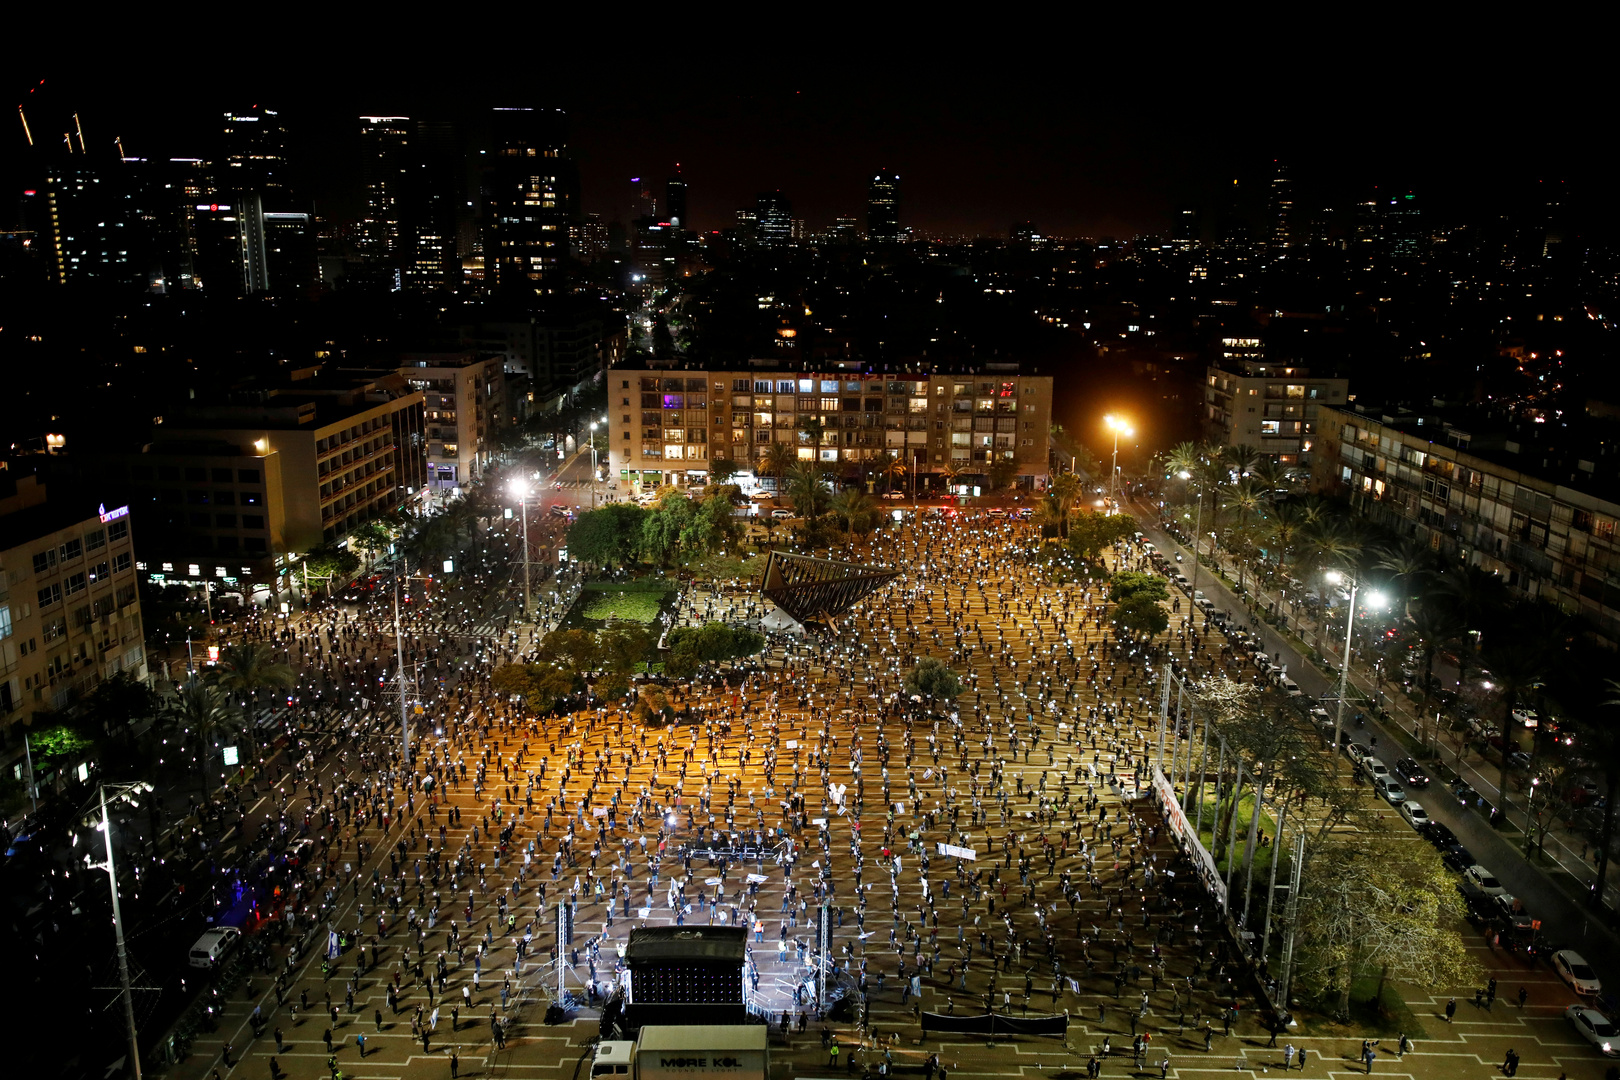 احتجاج بالآلاف في تل أبيب ضد سياسة نتنياهو بالرغم من قيود كورونا